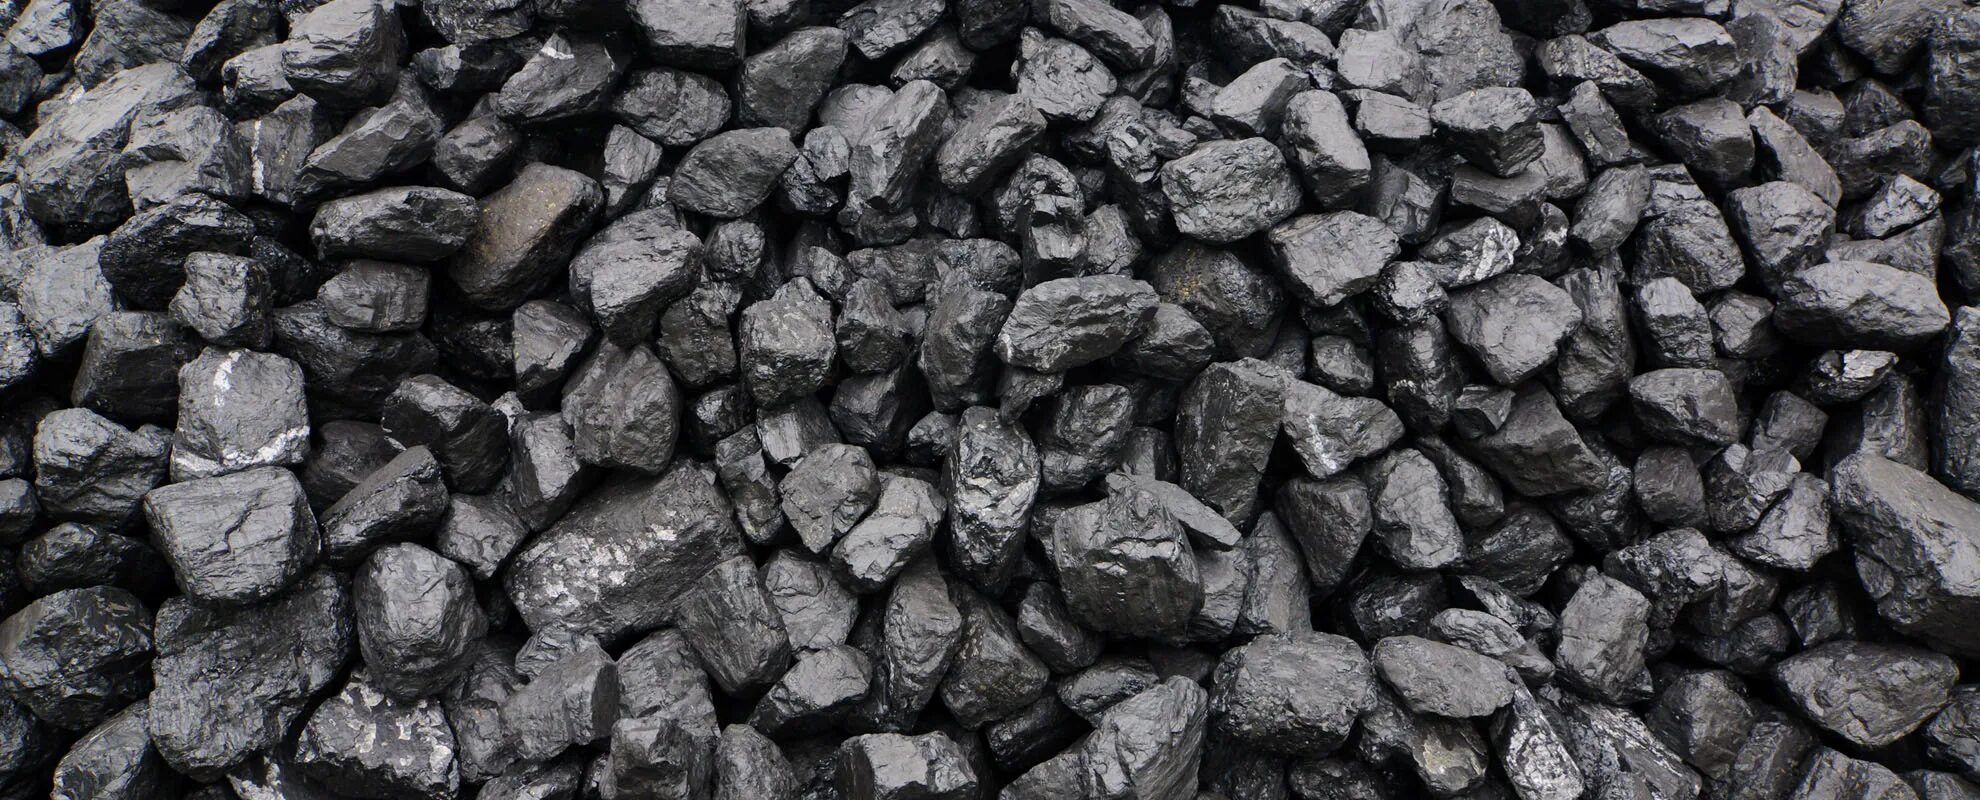 Угля топлива велико уголь. Уголь. Каменный уголь. Текстура угля. Битуминозный каменный уголь.